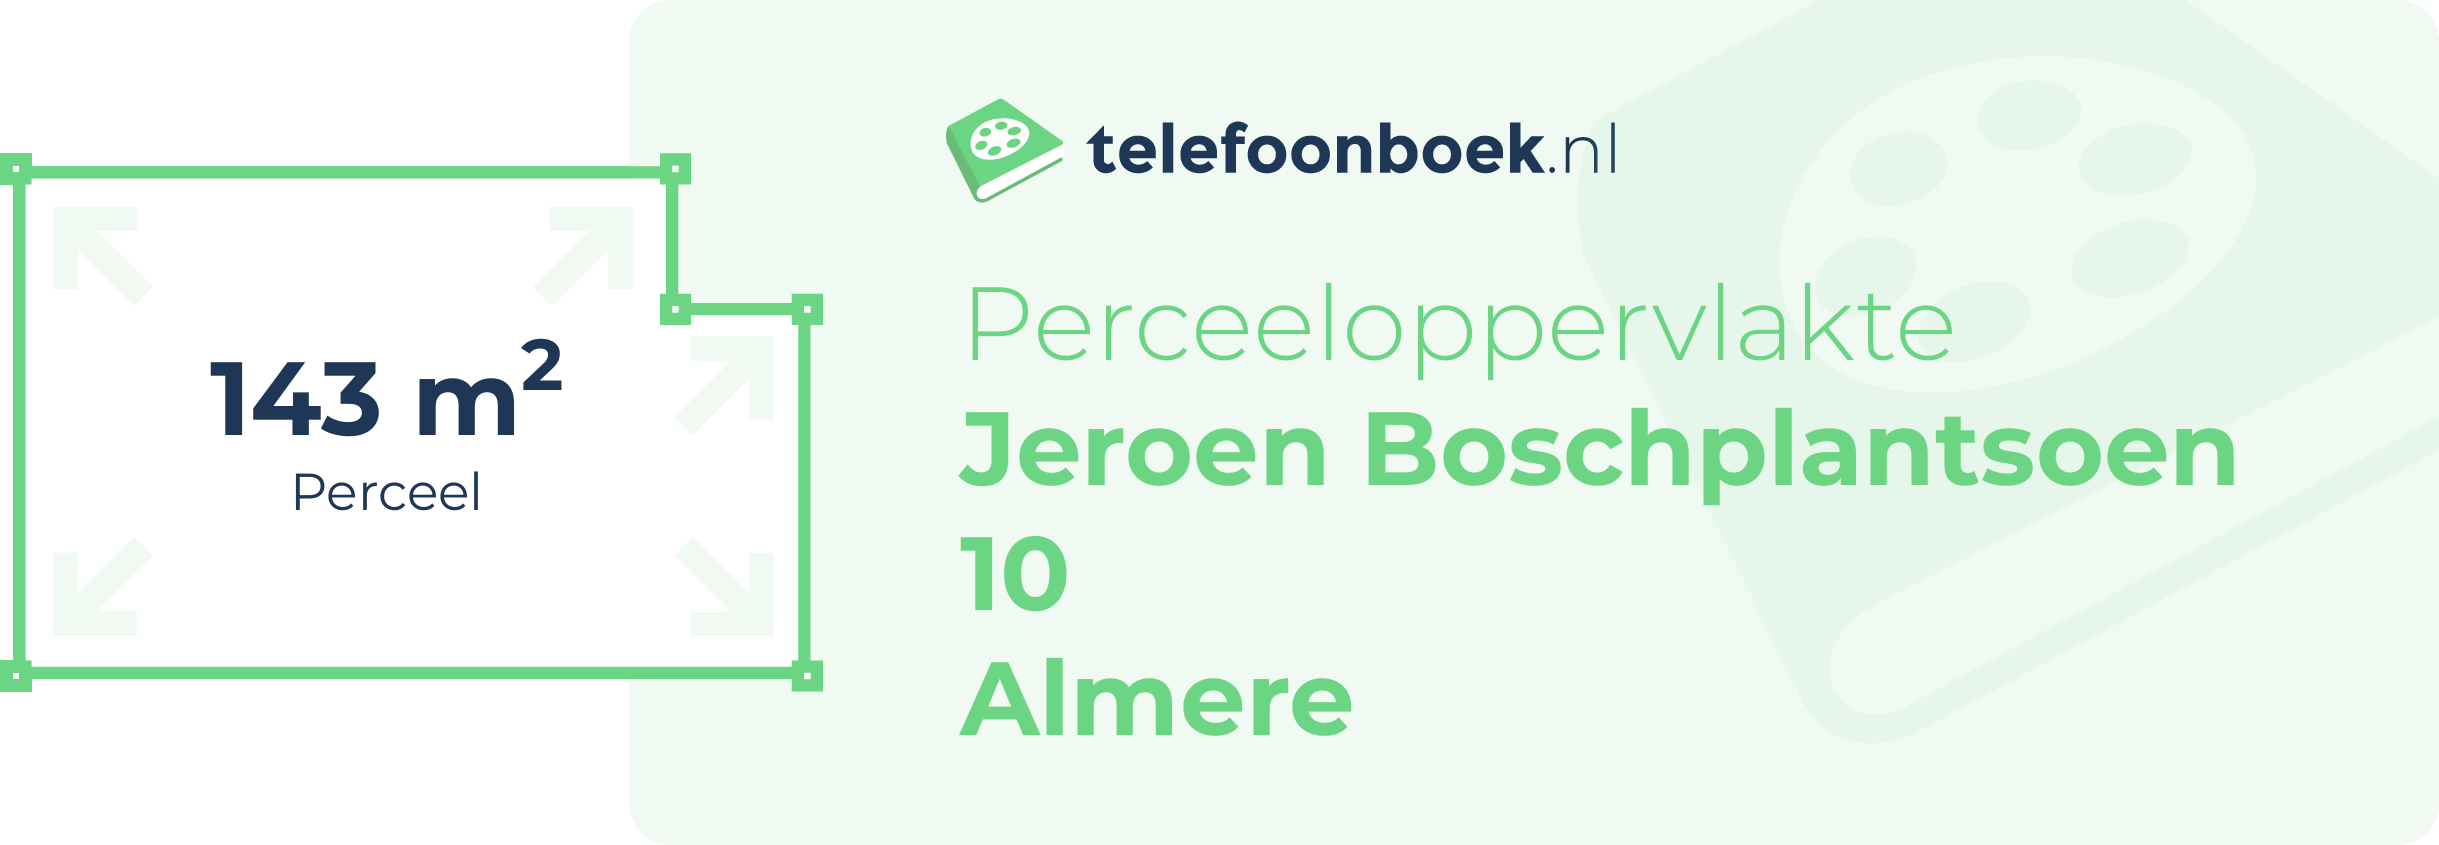 Perceeloppervlakte Jeroen Boschplantsoen 10 Almere